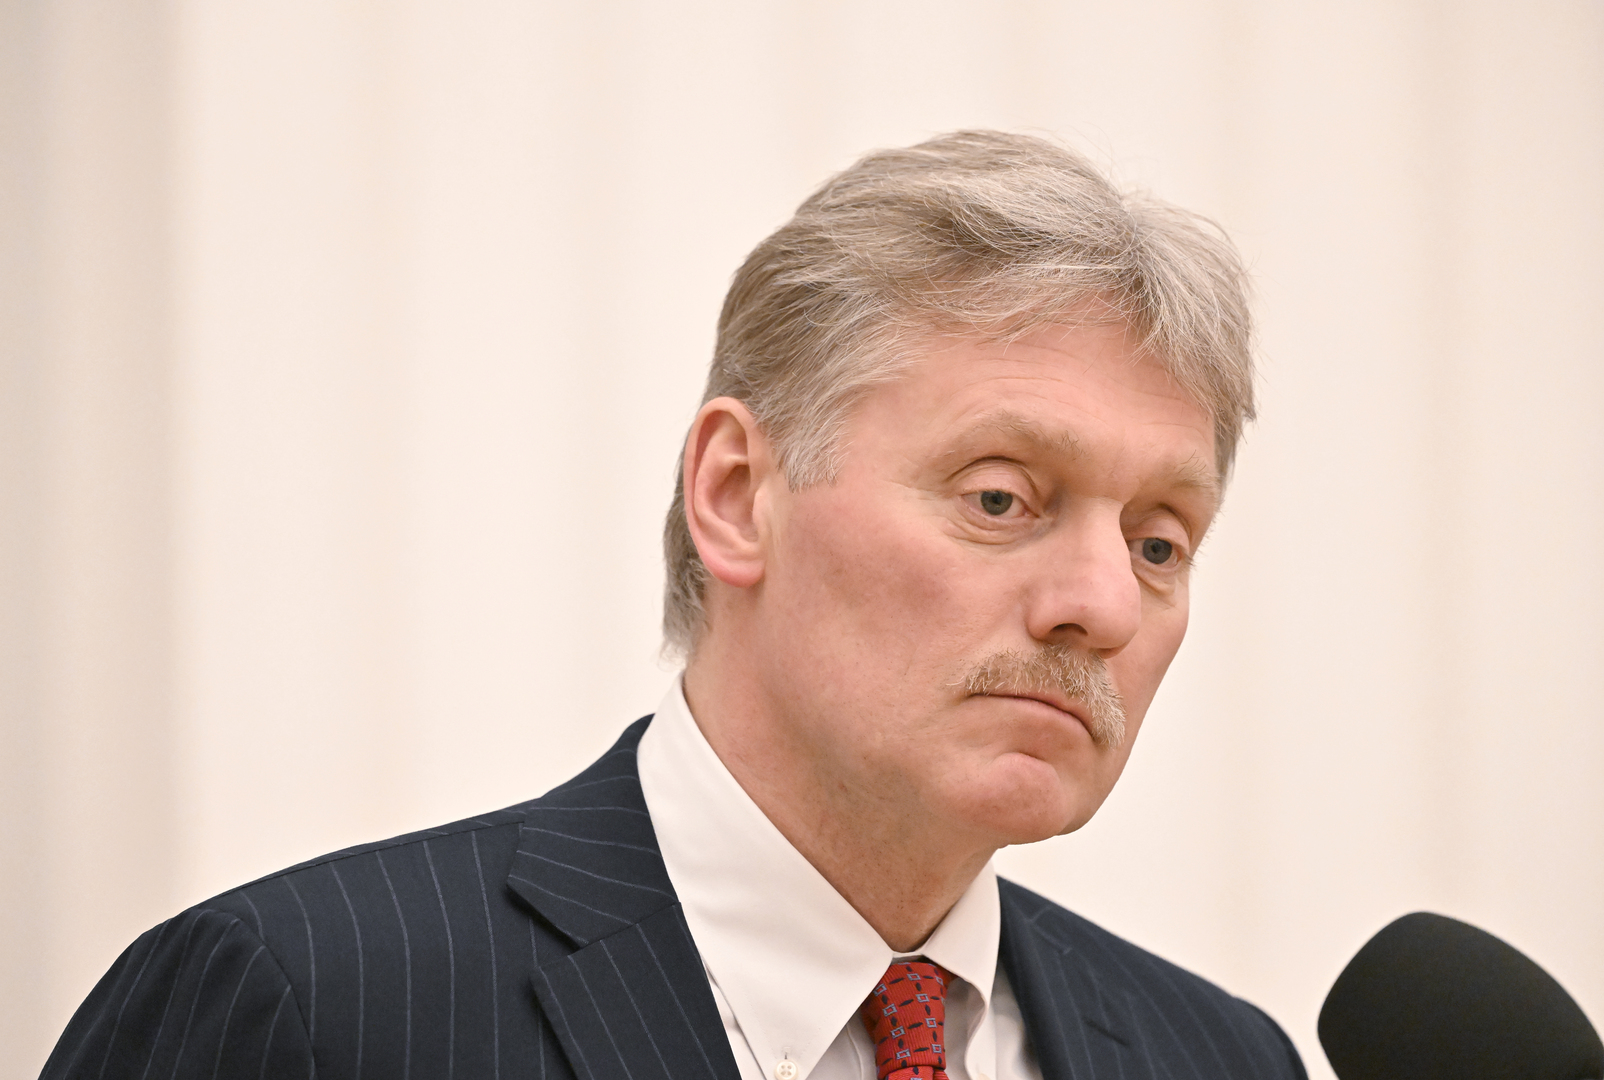 بيسكوف يعلق على توجه جونسون للاستقالة وأزمة الحكومة البريطانية